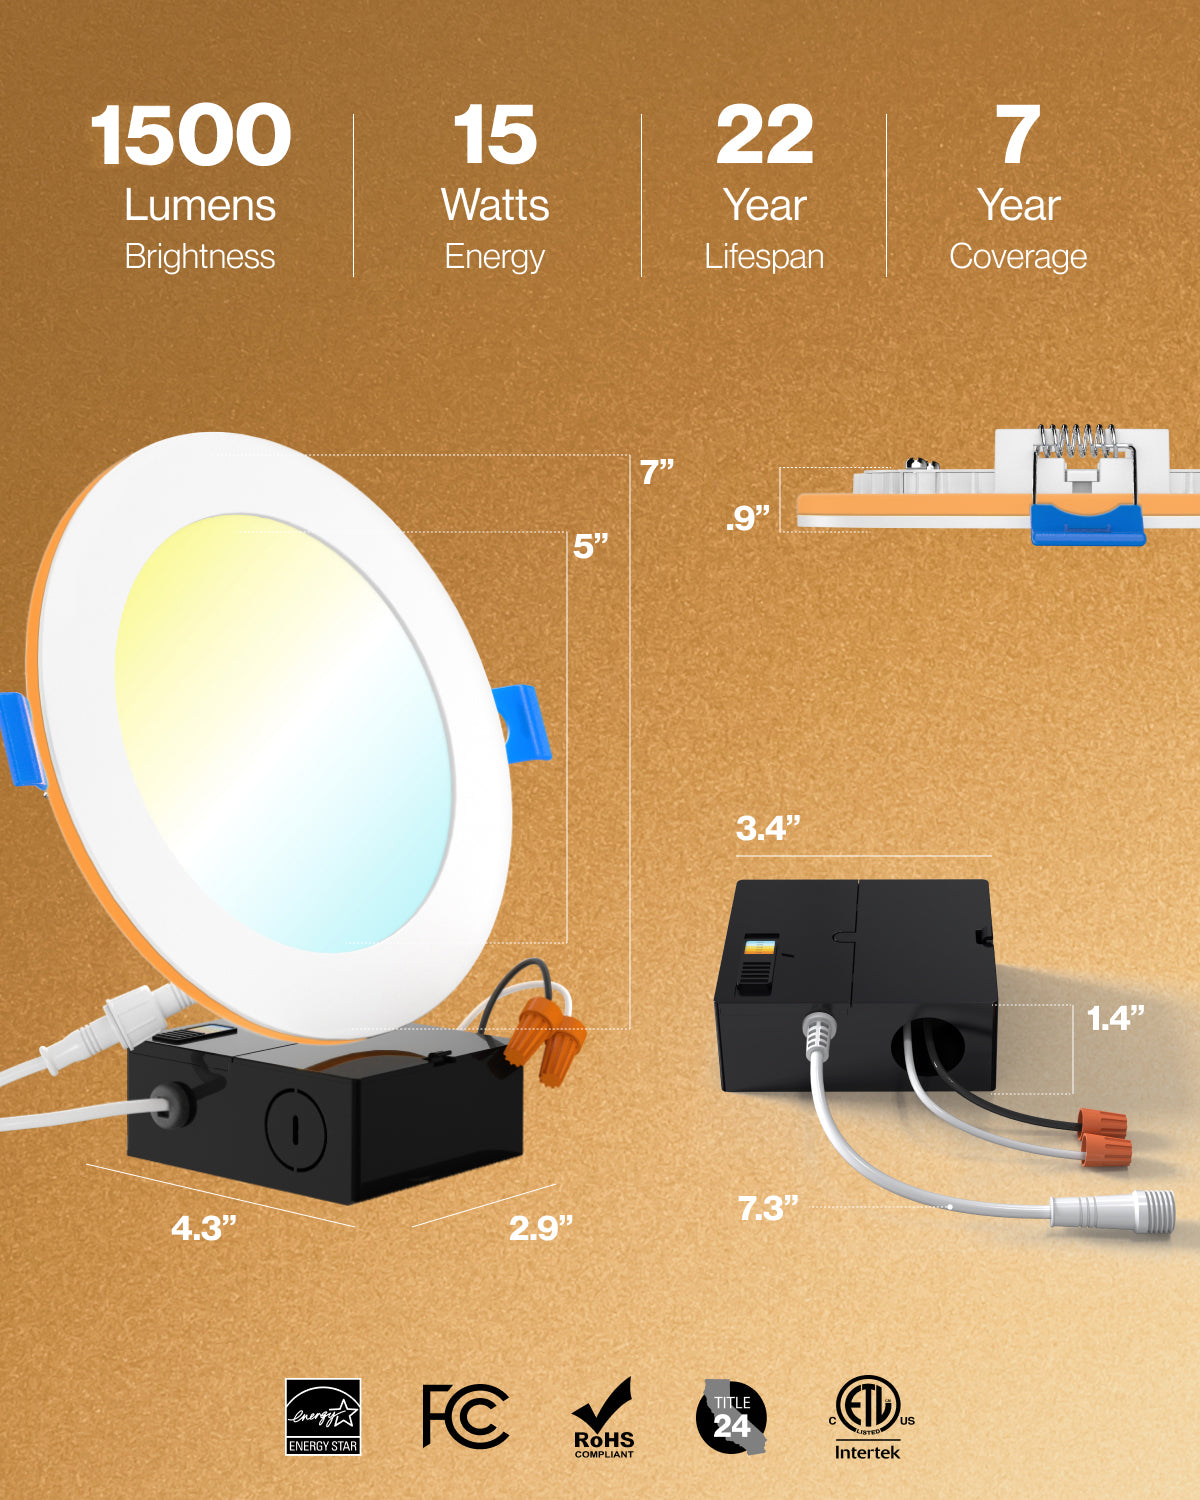 1500 lumens brightness, 15 watts energy saver, 22 year lifespan with 7 years coverage